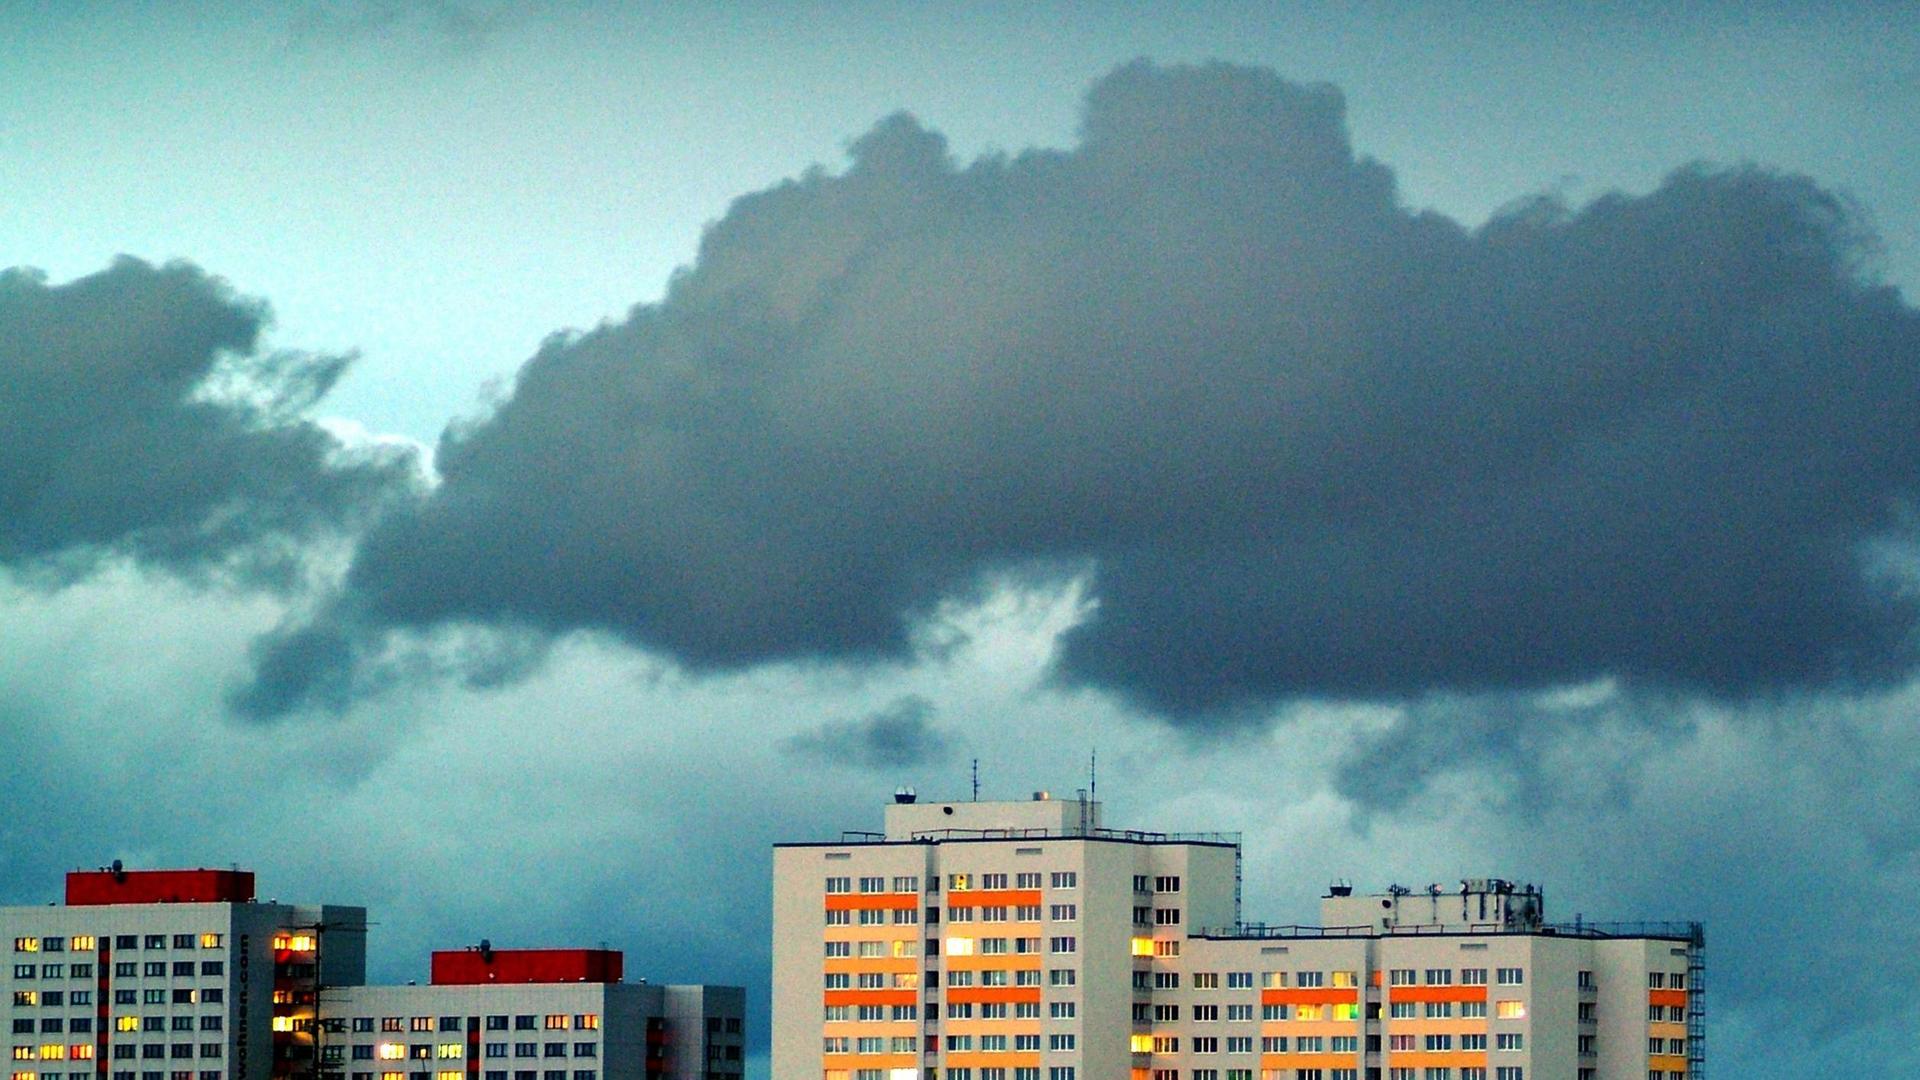 Dunkle Wolken in einem weiten Himmel ziehen über Hochhäuser deren Fenster beleuchtet sind.